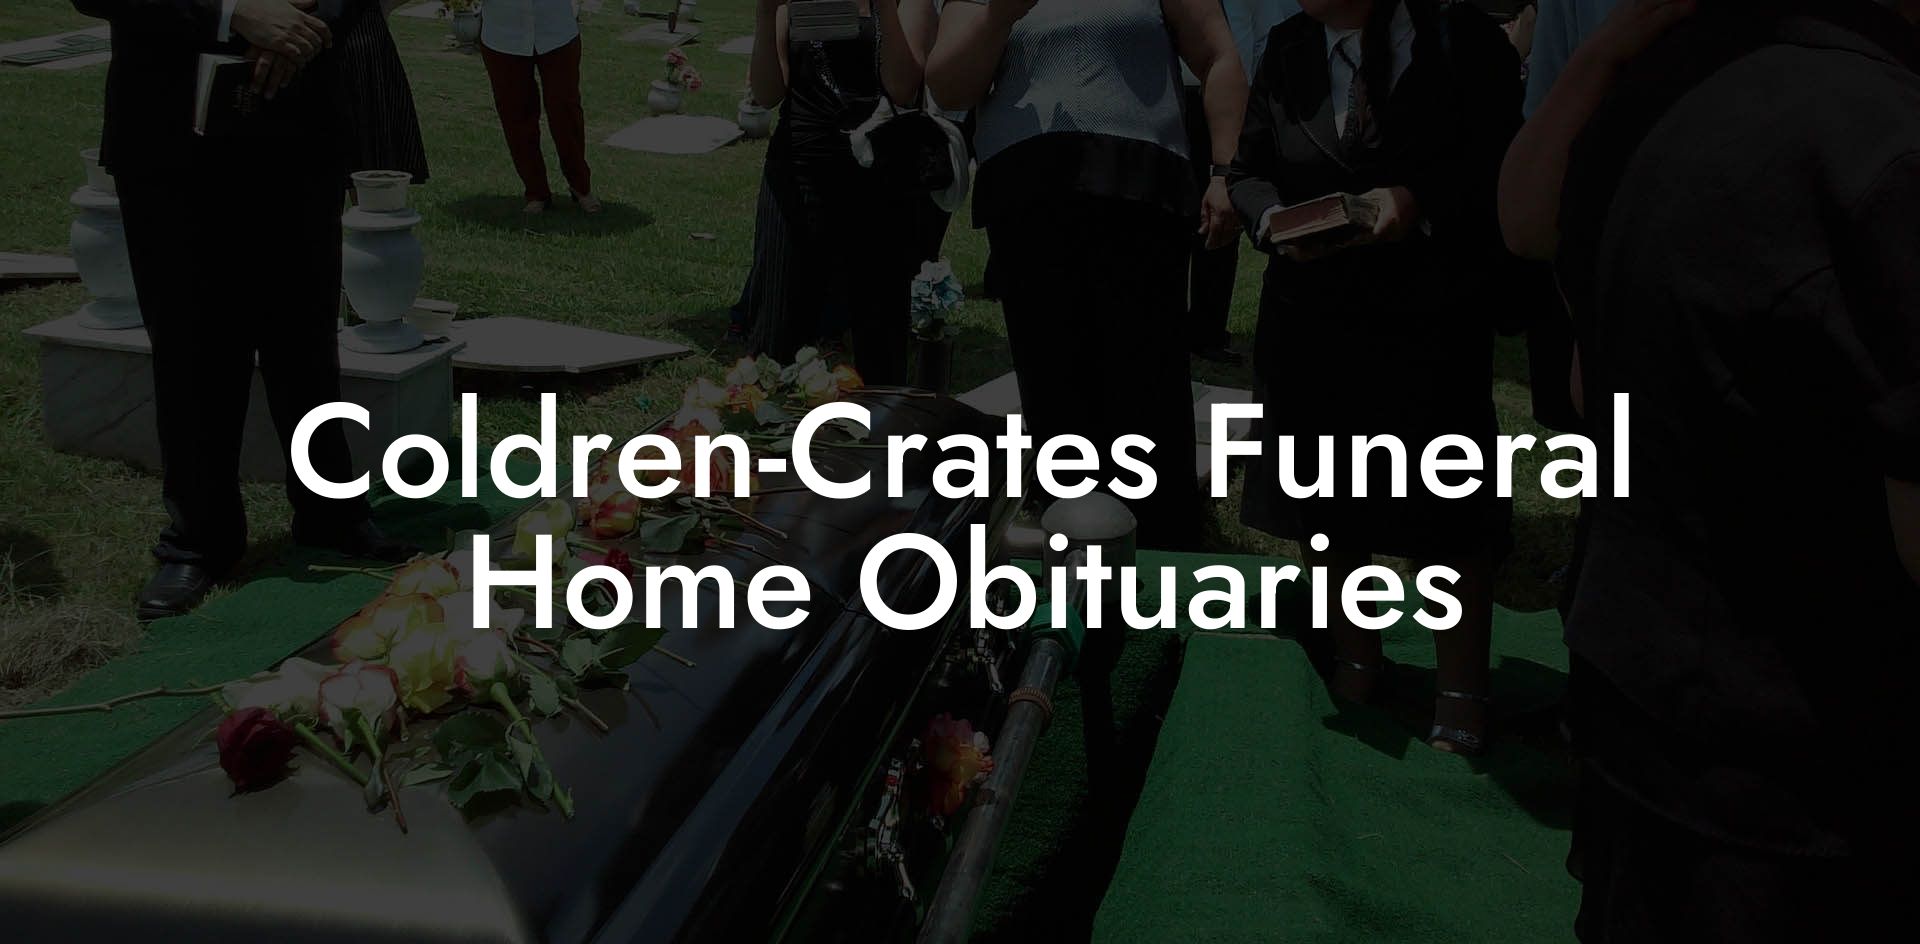 Coldren-Crates Funeral Home Obituaries